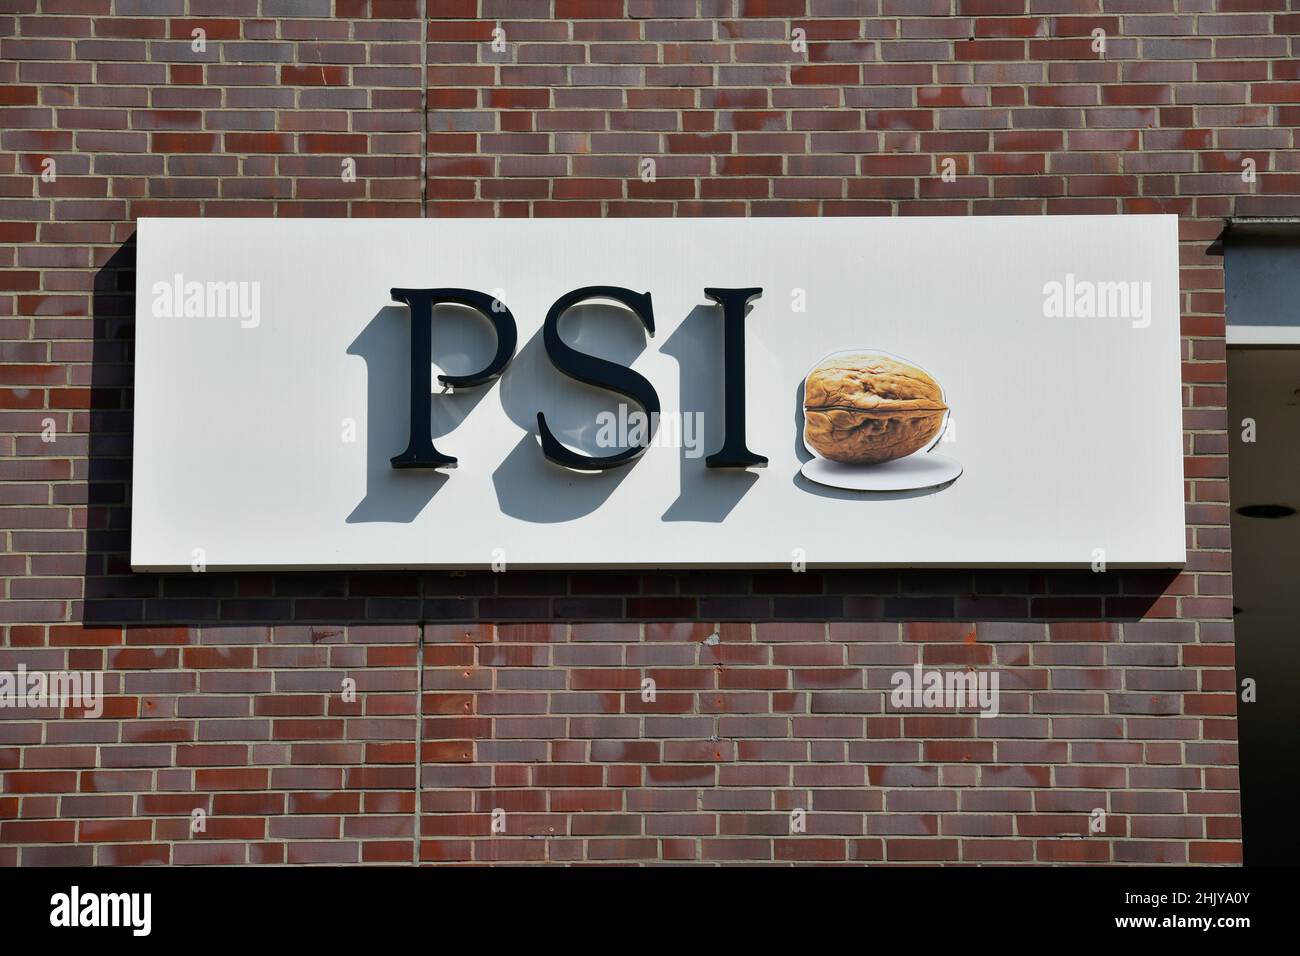 PSI-Software AG, Dircksenstraße, Mitte, Berlin, Deutschland Stockfoto